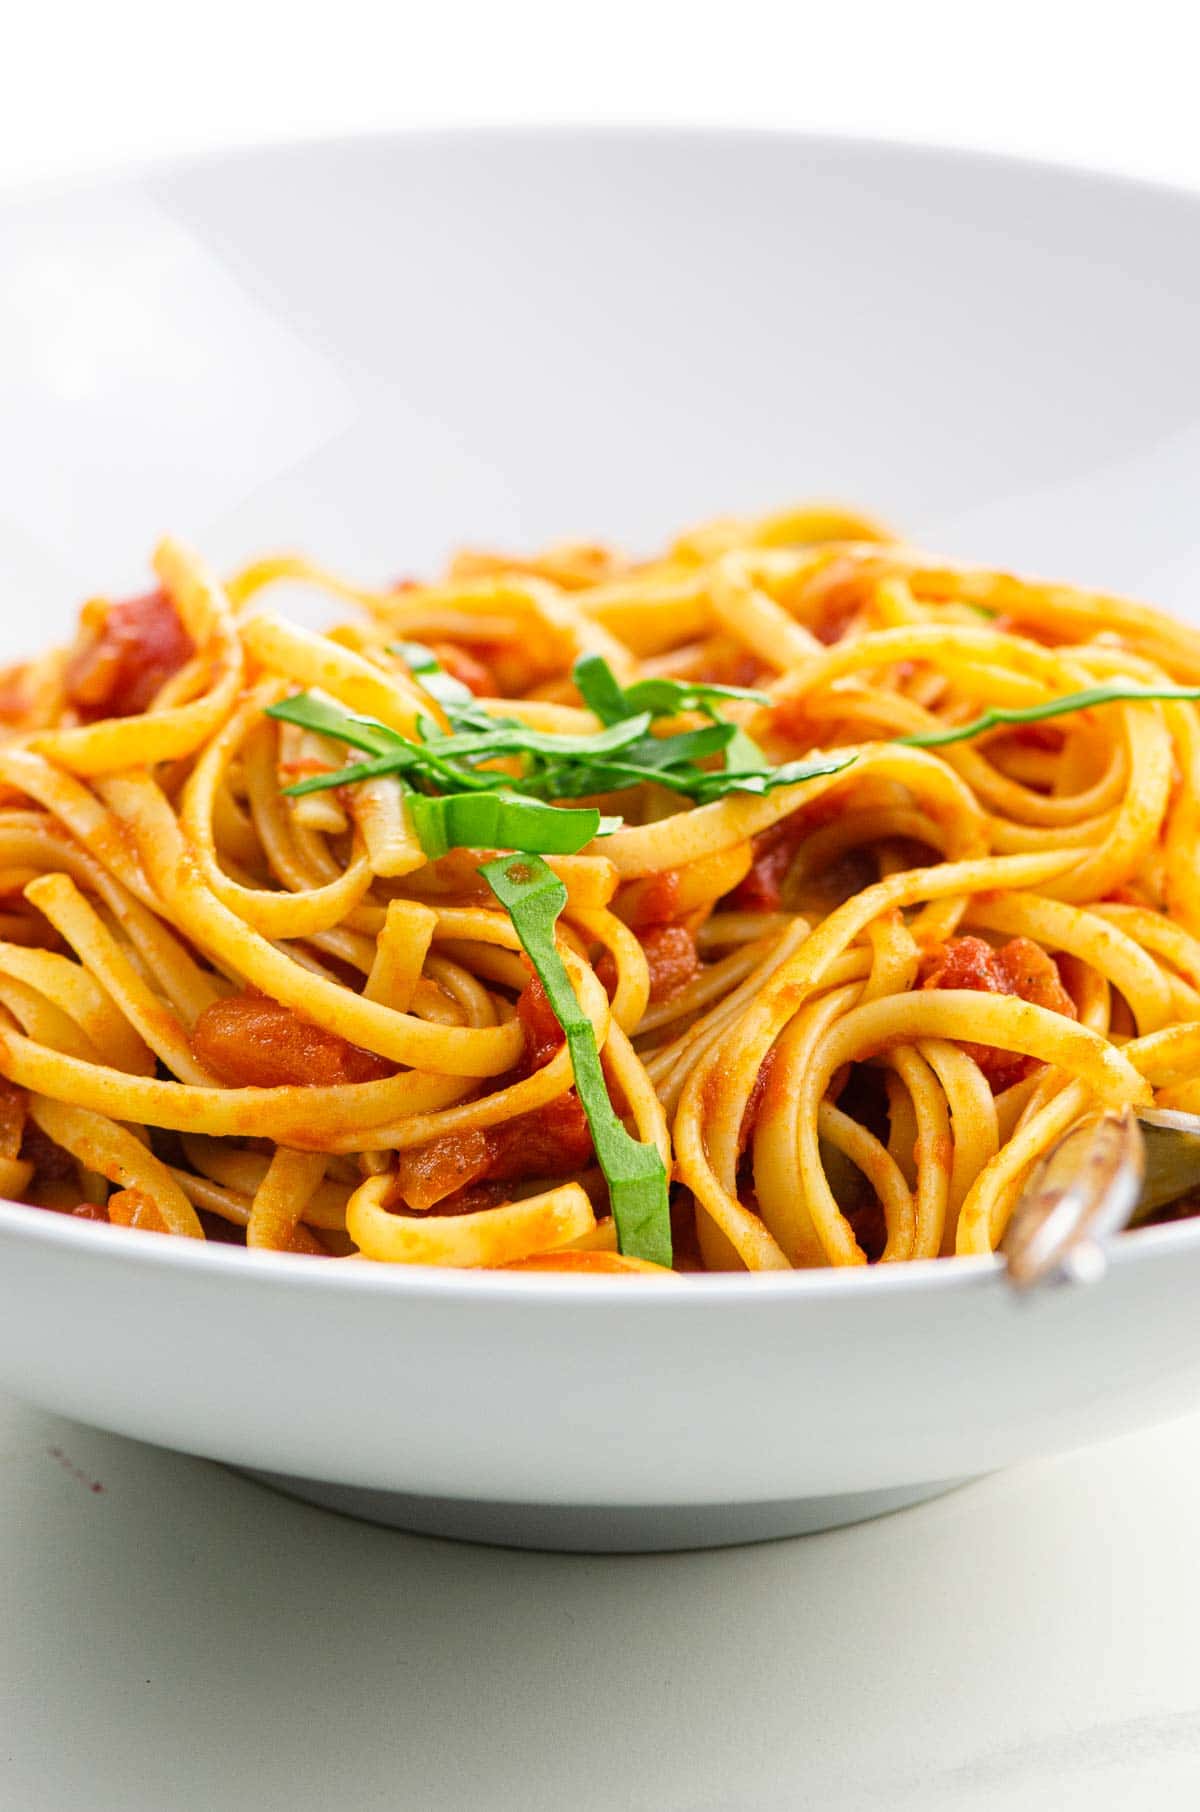 spaghetti al pomodoro in a white bowl (actually linguine)